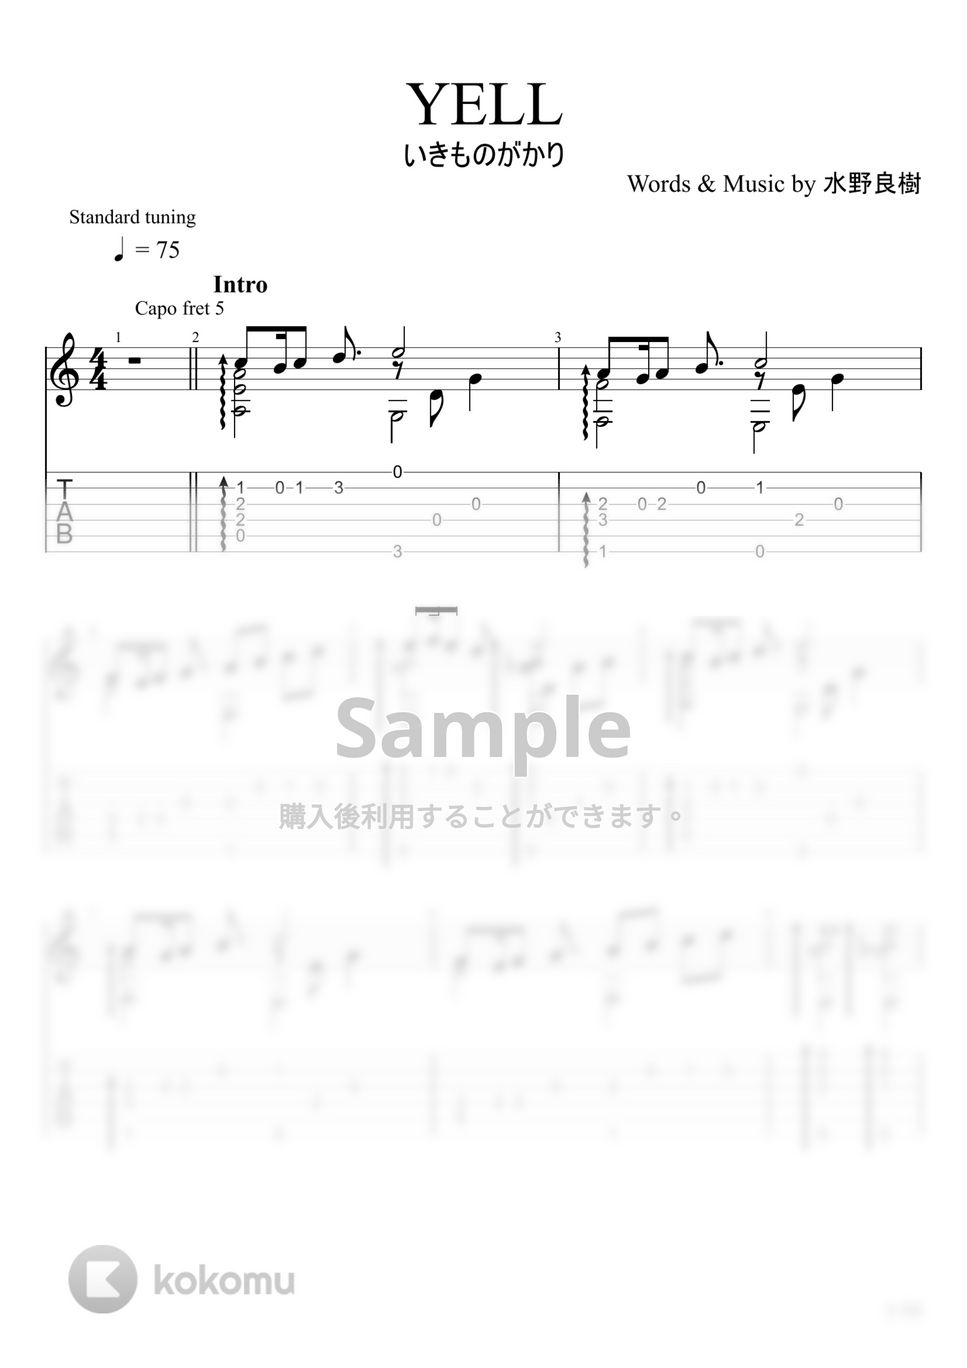 いきものがかり - YELL (ソロギター) by u3danchou